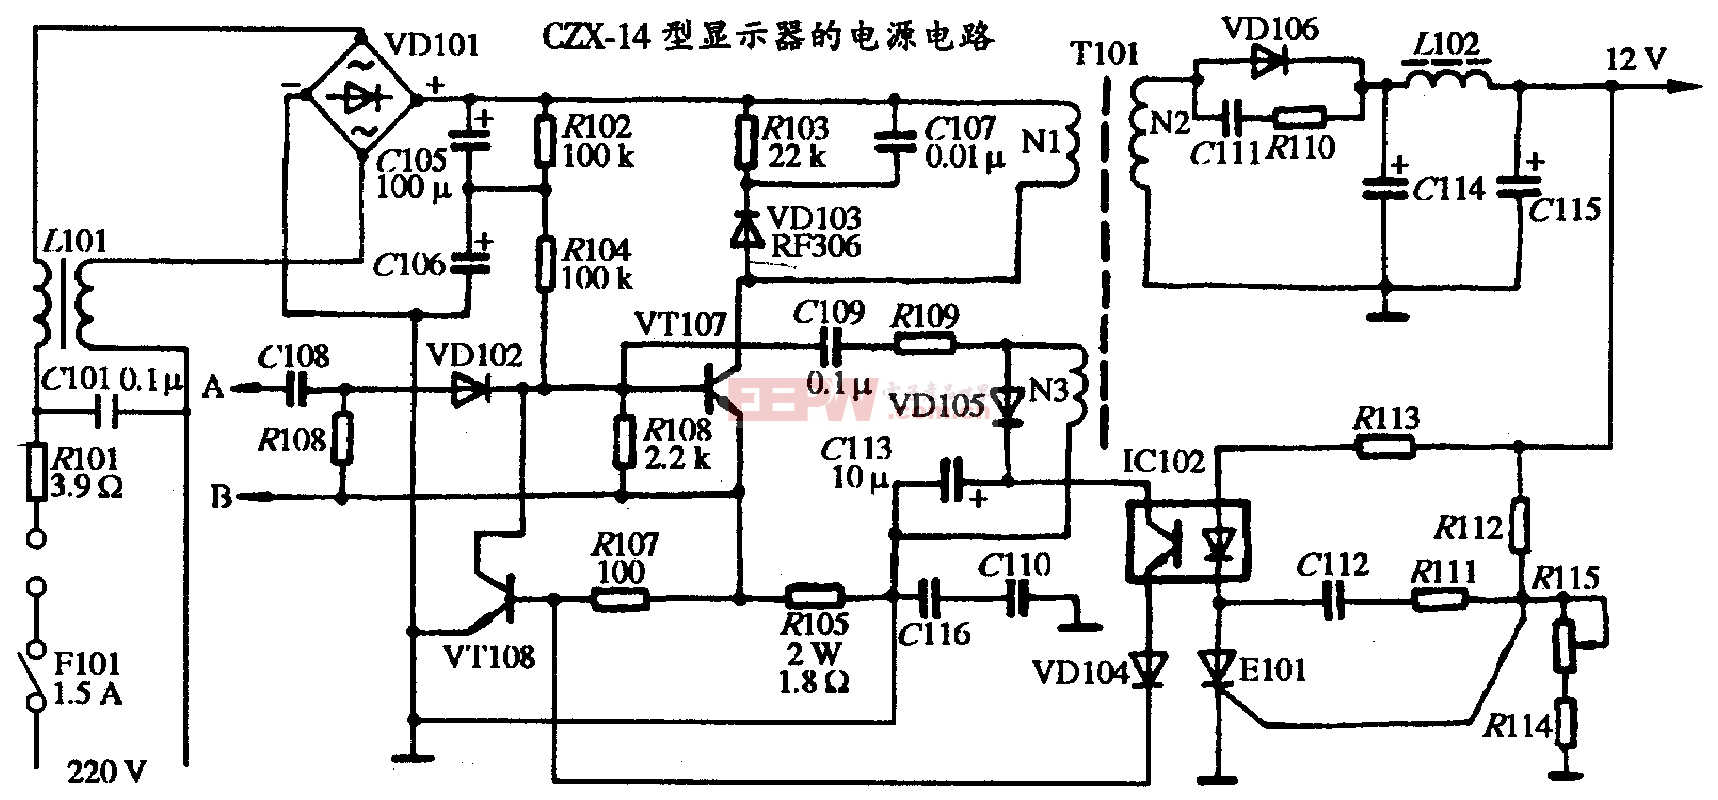 36、CZX-14型顯示器的電源電路圖